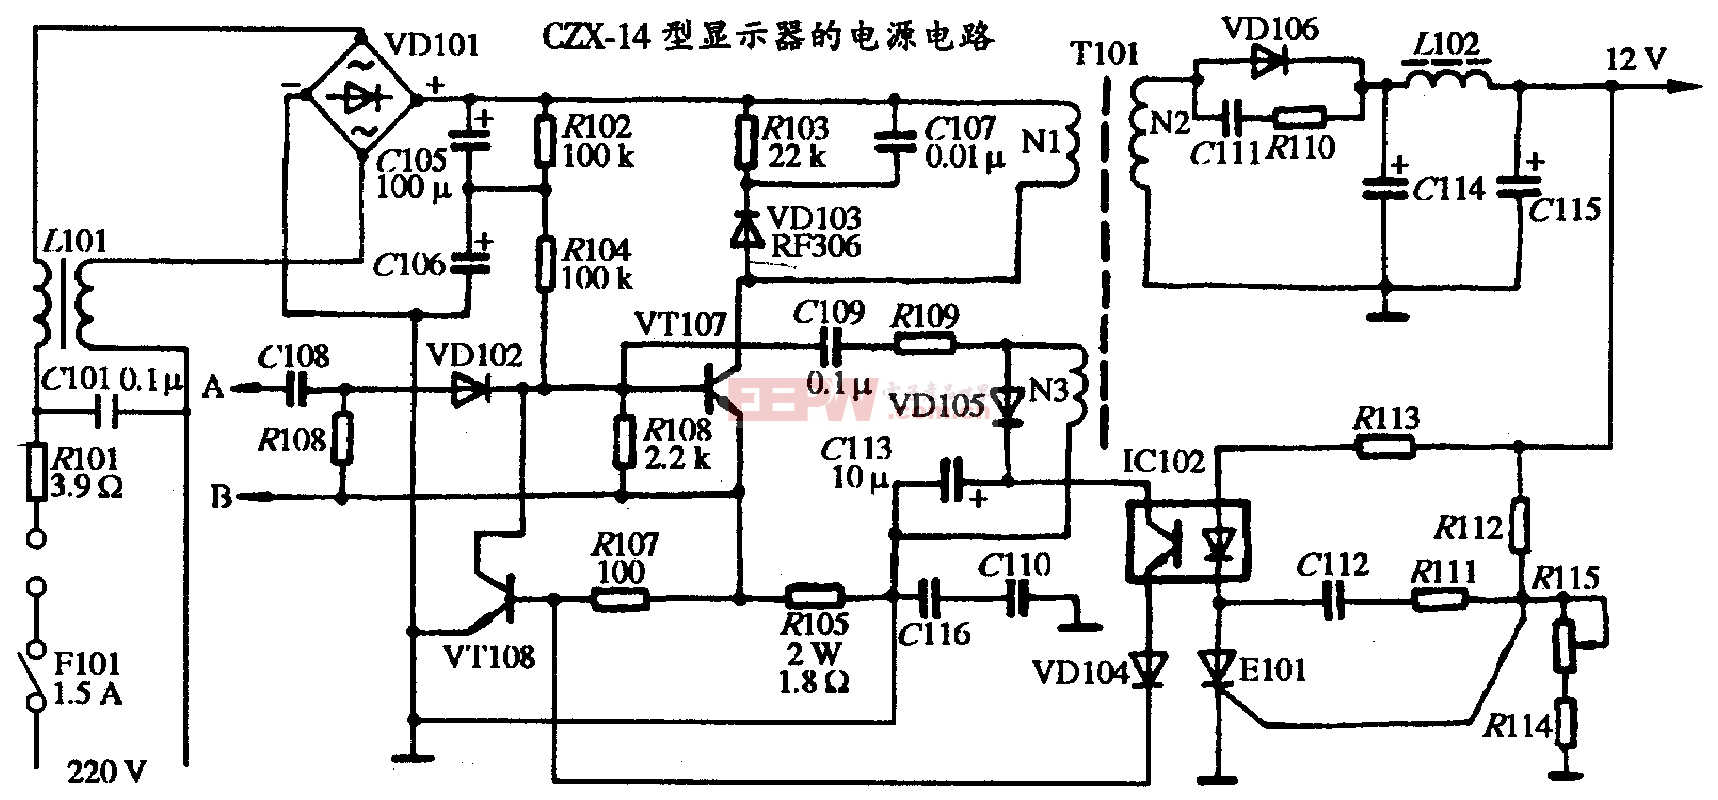 36、CZX-14型顯示器的電源電路圖